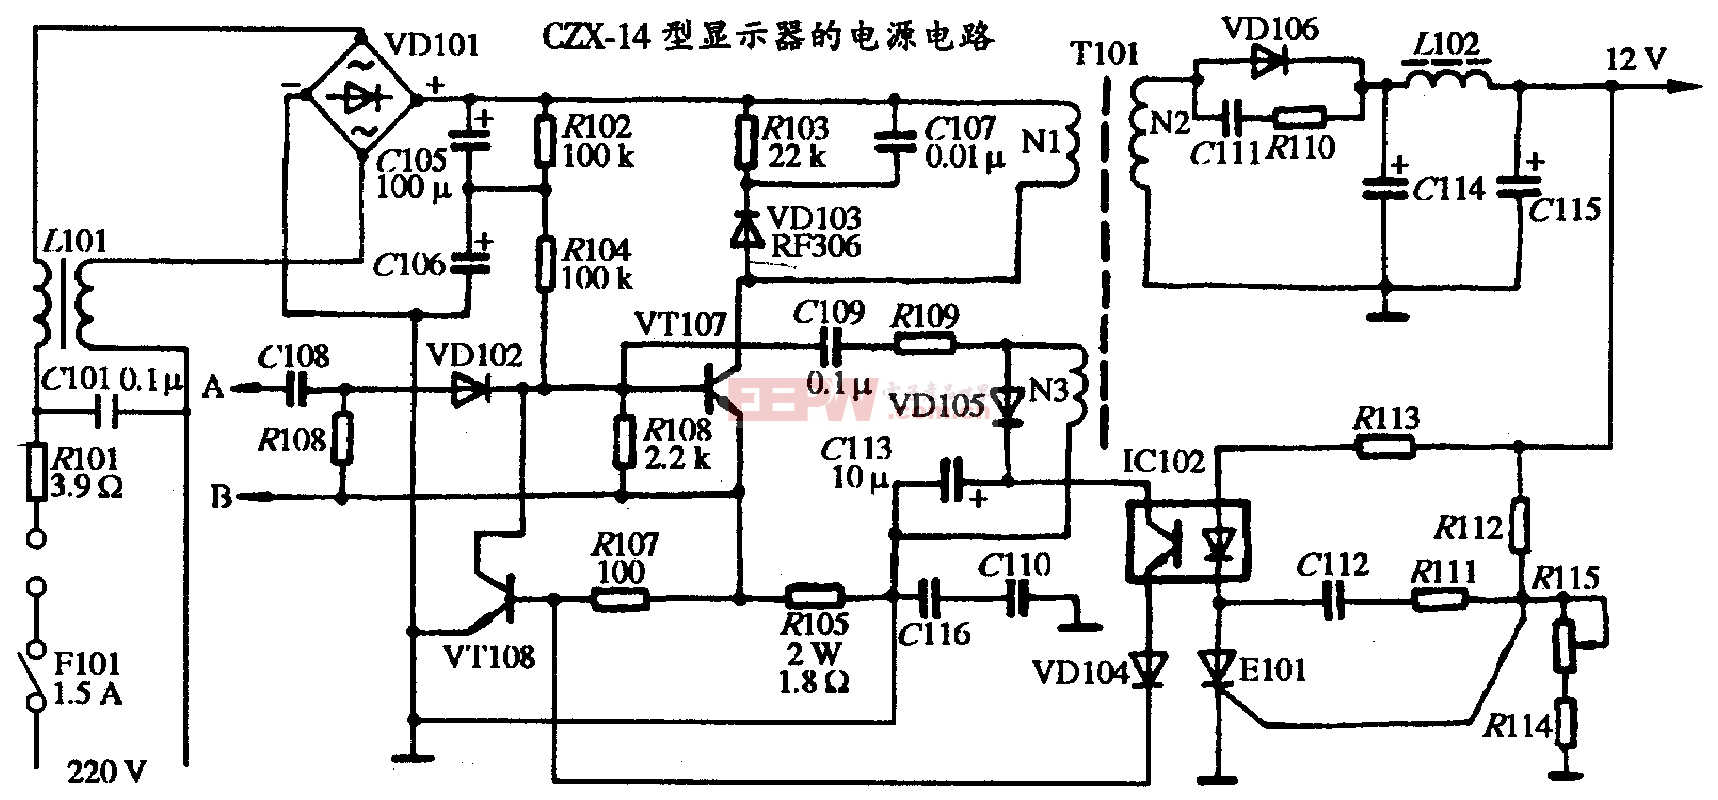 36、CZX-14型顯示器的電源電路圖